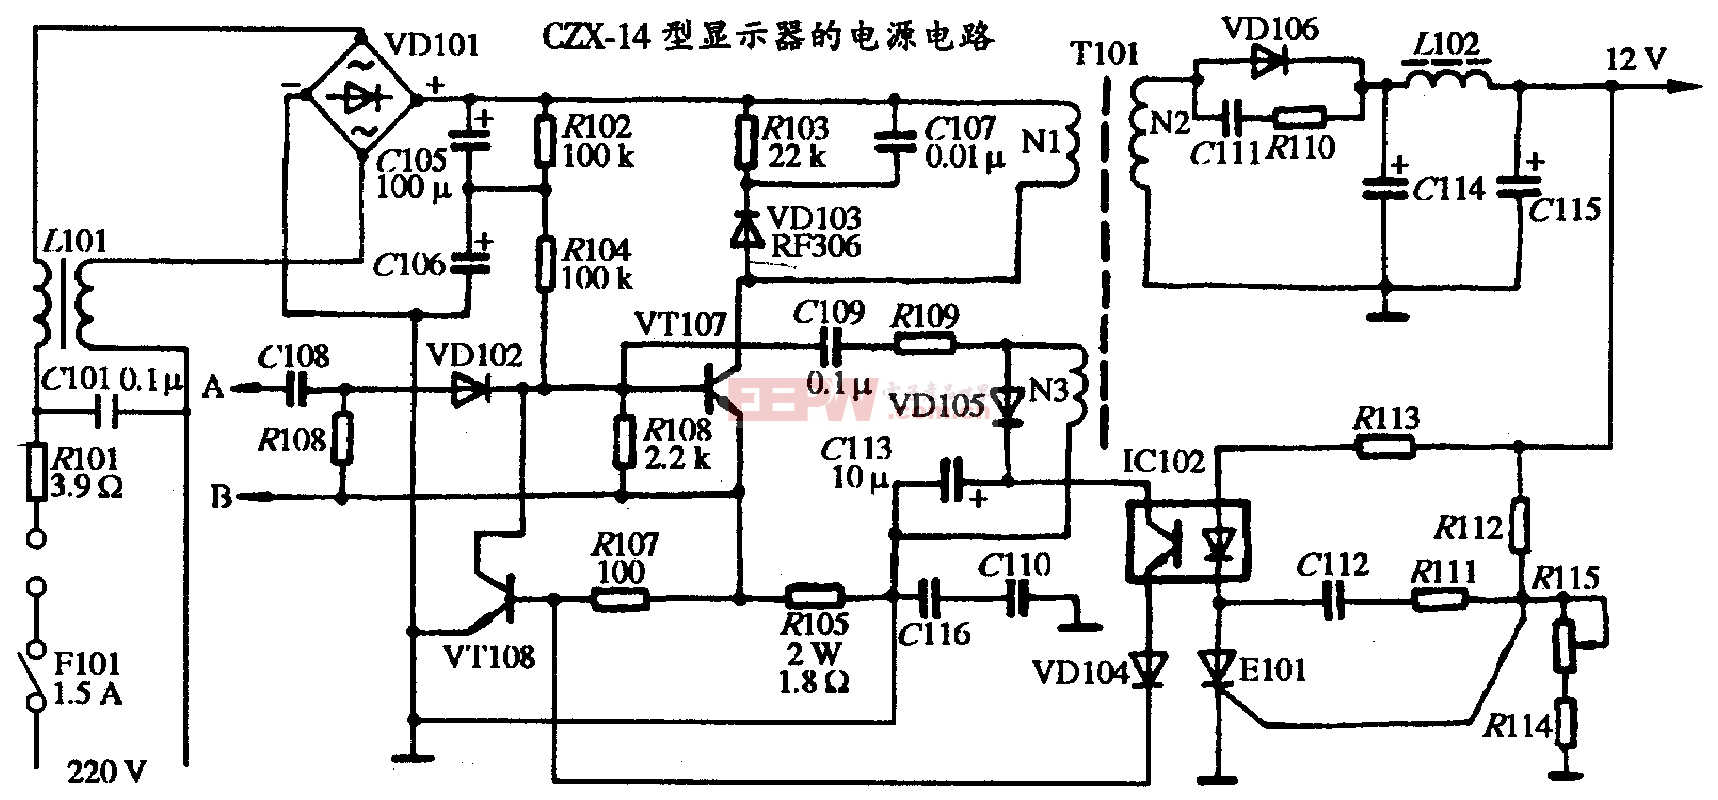 36、CZX-14型顯示器的電源電路圖